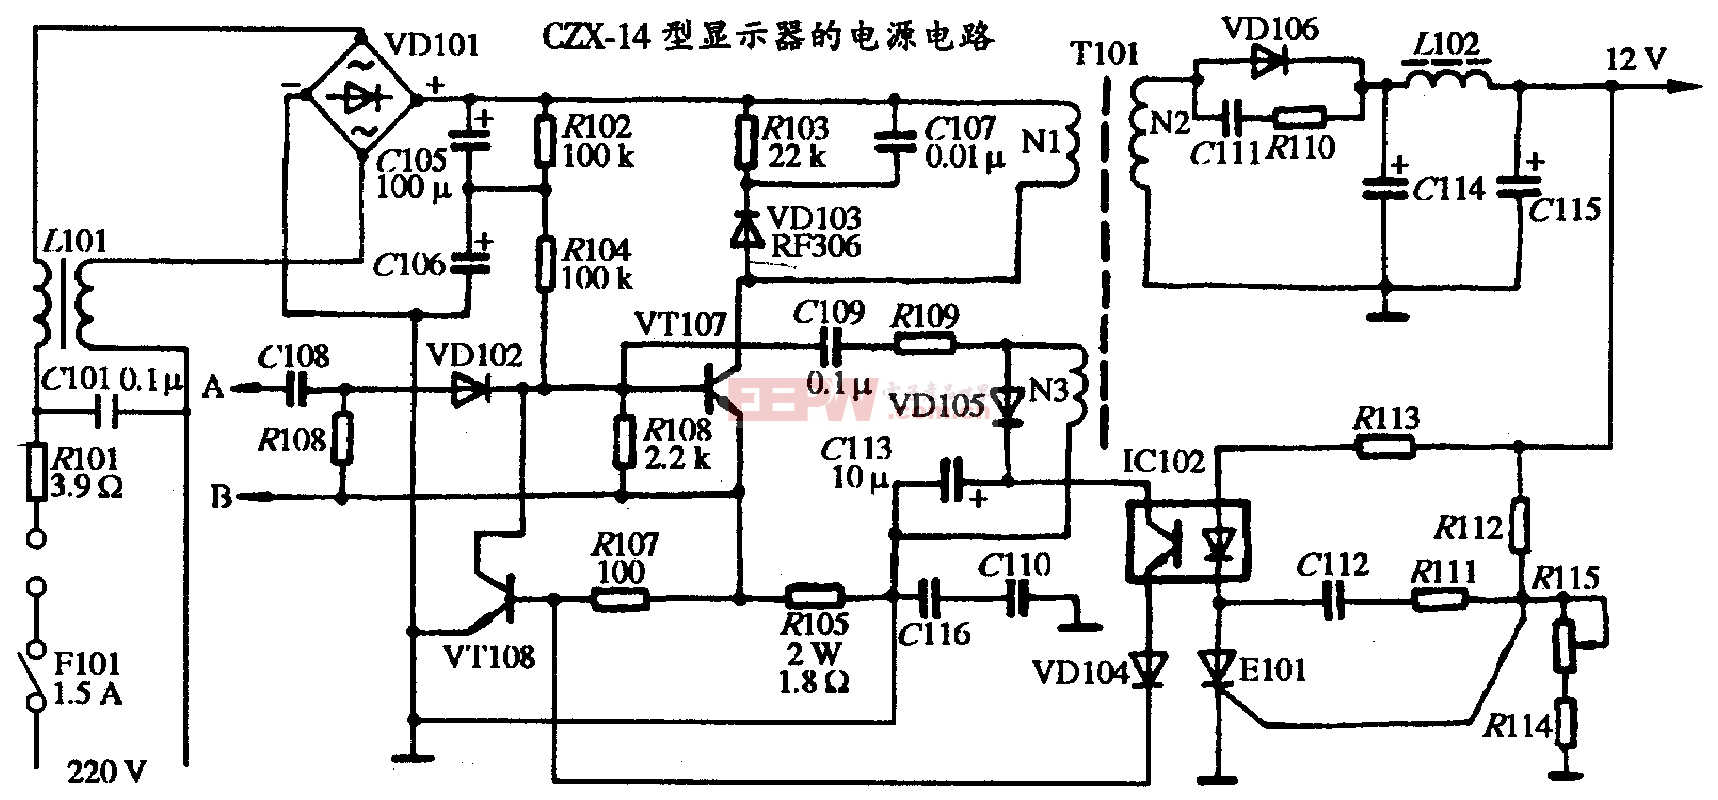 36、CZX-14型顯示器的電源電路圖